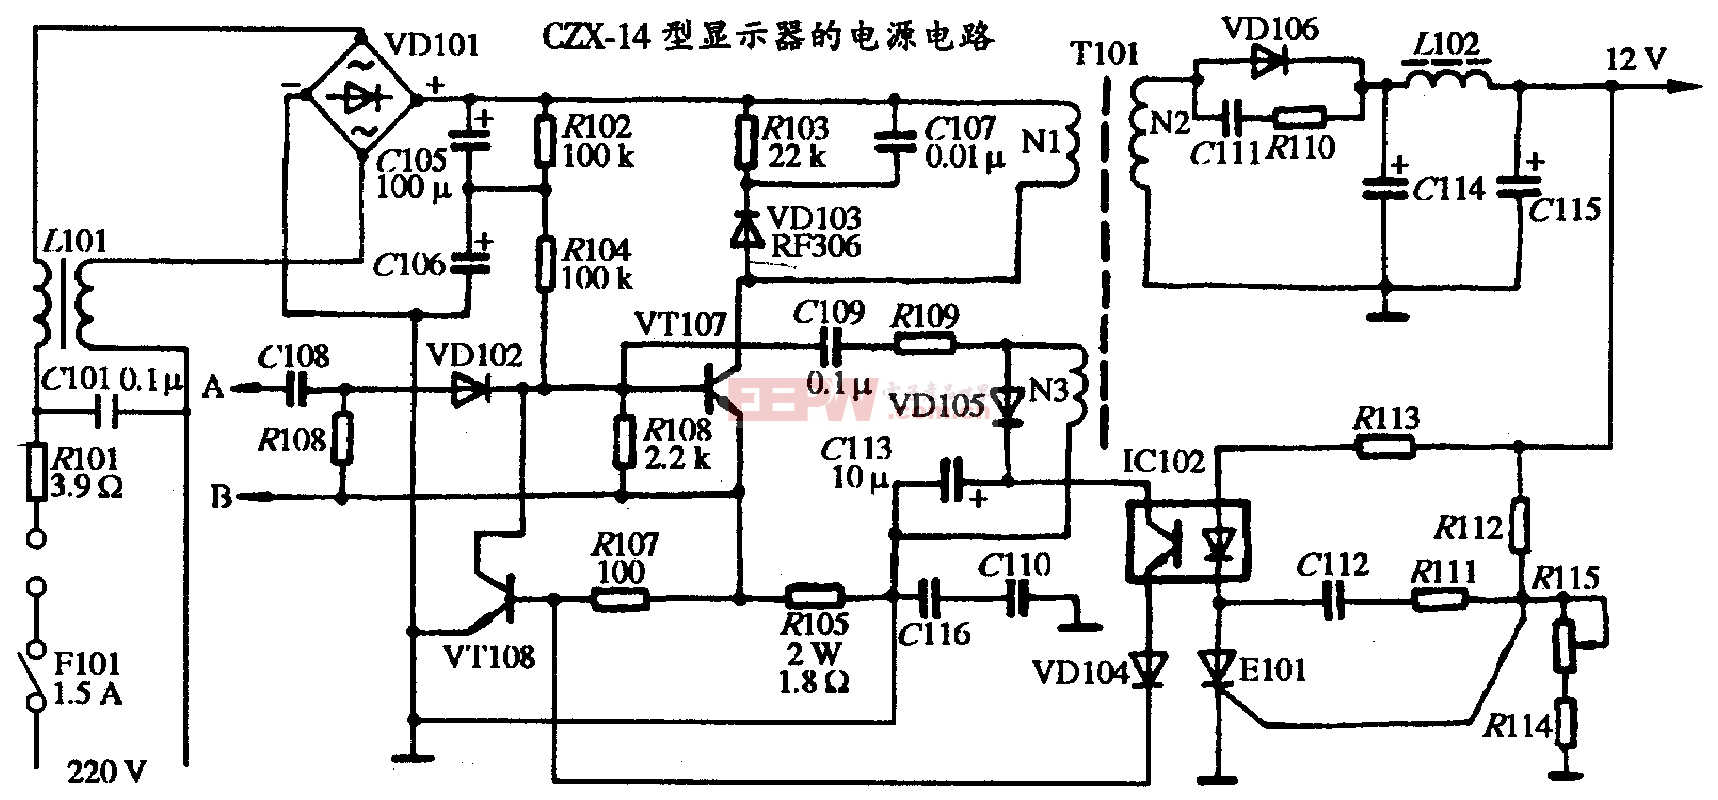 36、CZX-14型顯示器的電源電路圖